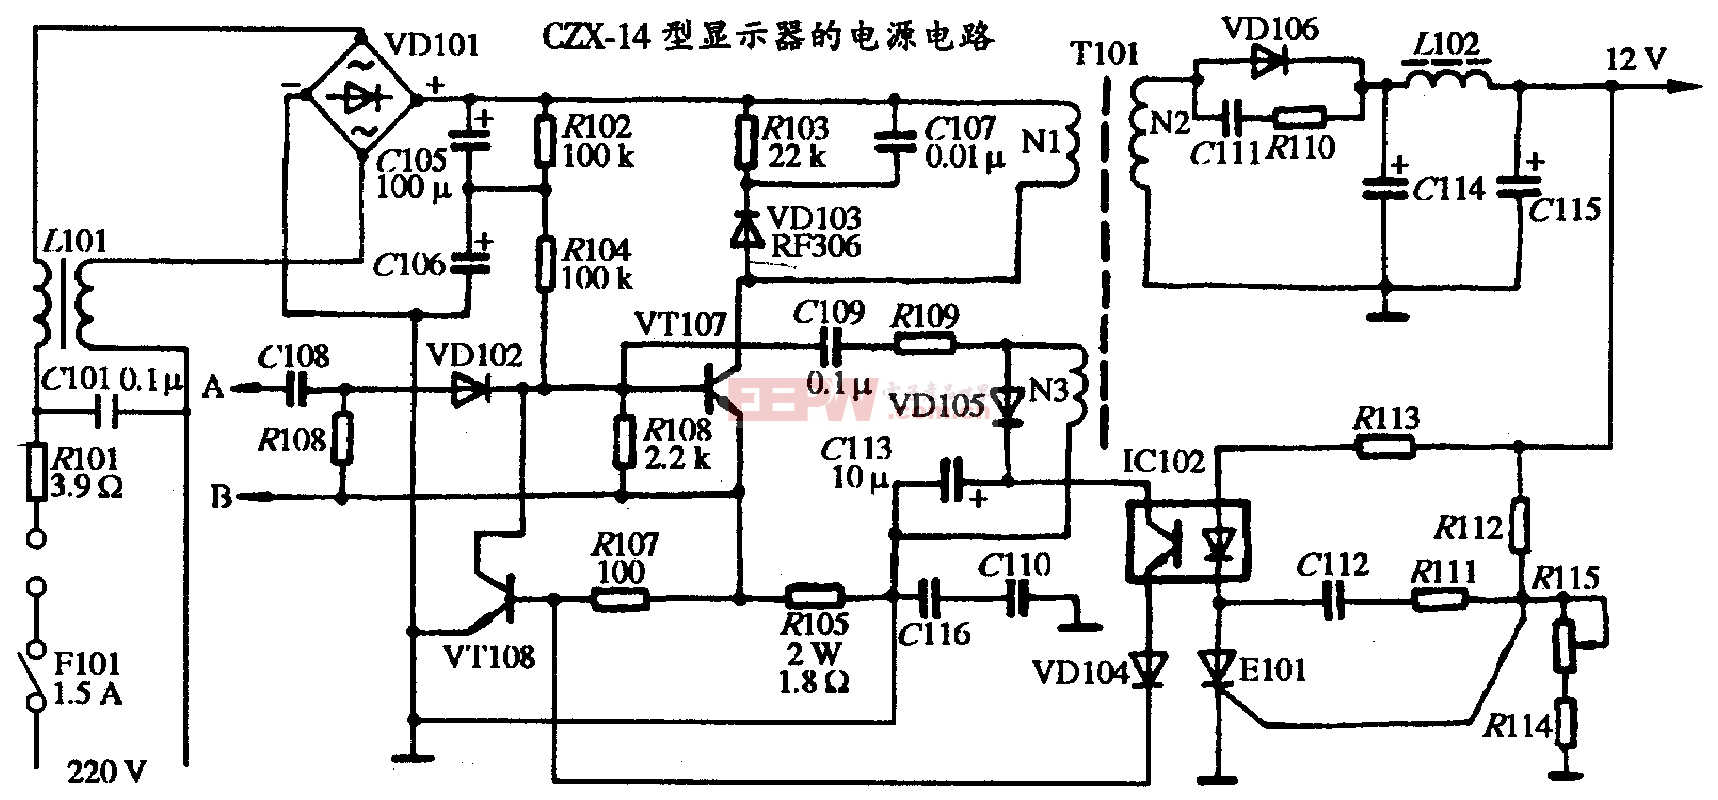 36、CZX-14型顯示器的電源電路圖